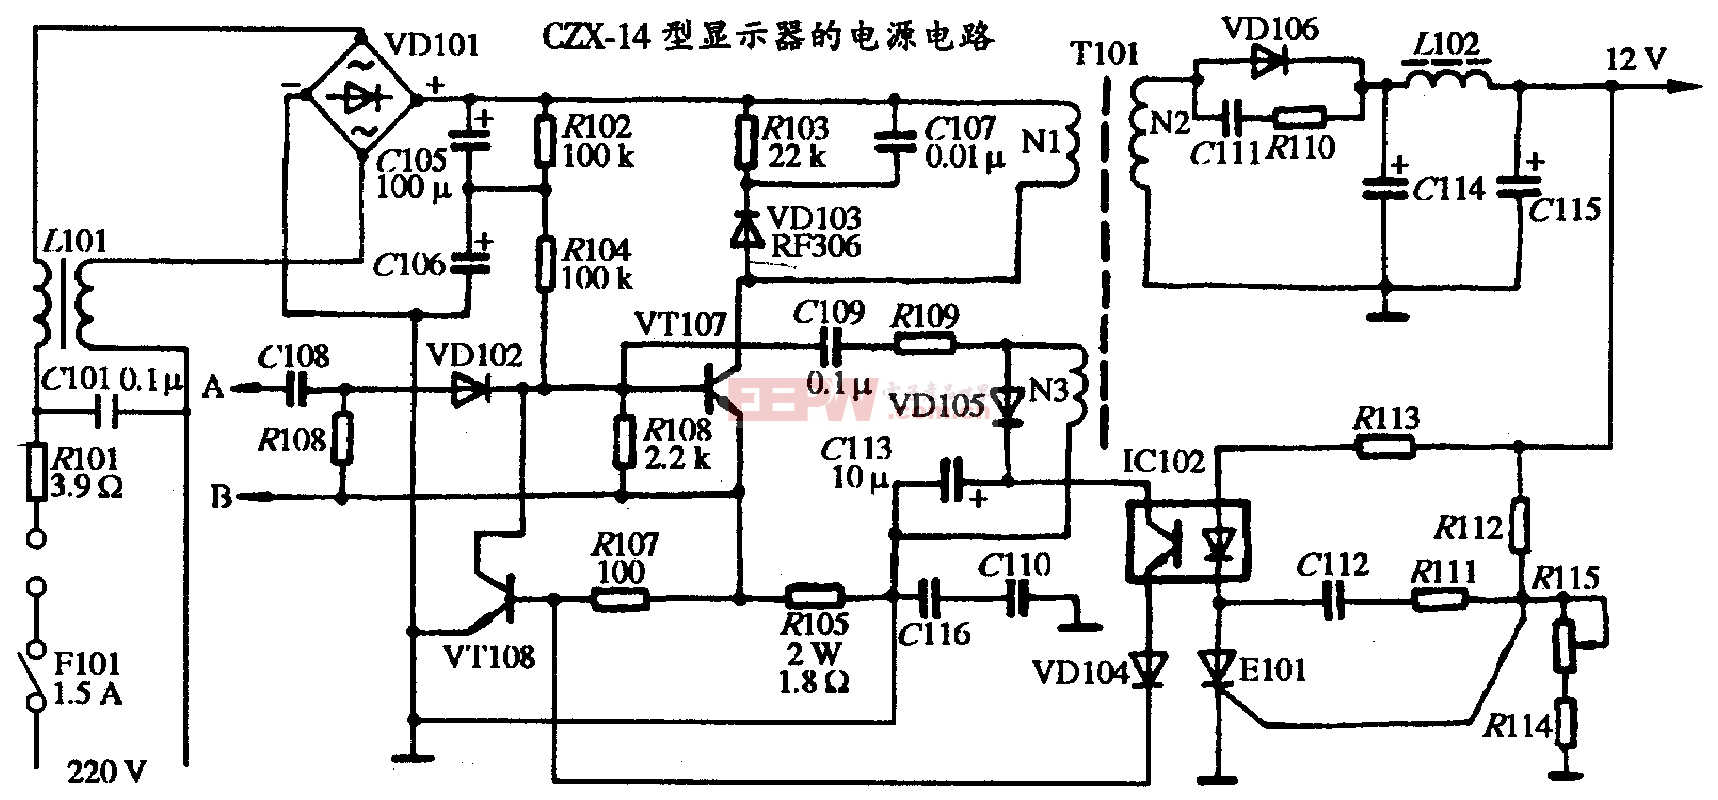 36、CZX-14型顯示器的電源電路圖